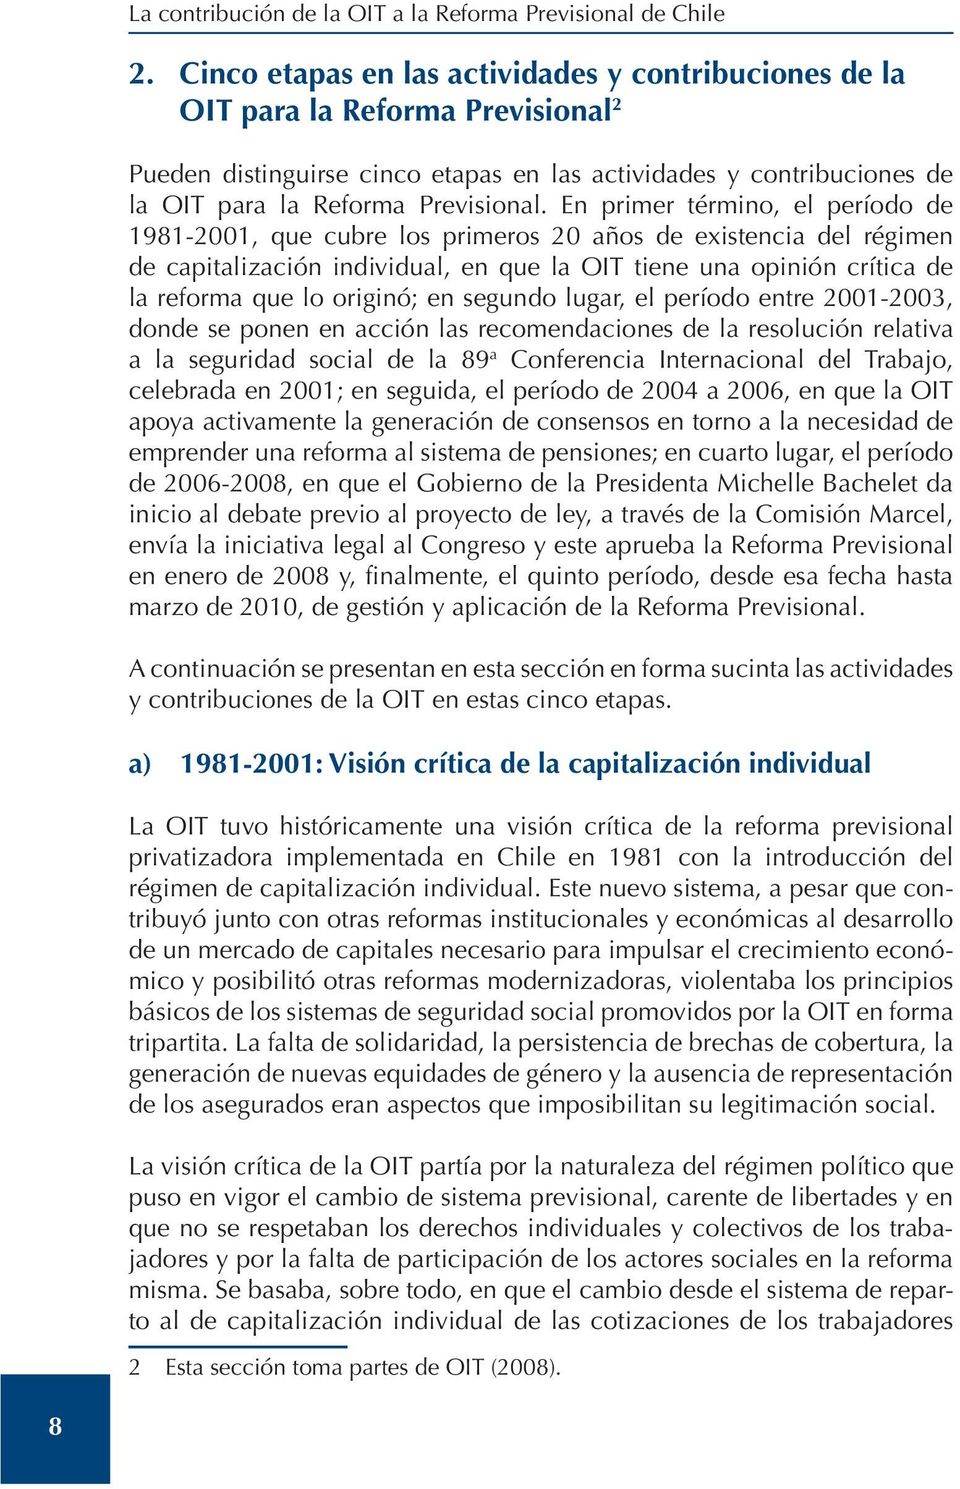 En primer término, el período de 1981-2001, que cubre los primeros 20 años de existencia del régimen de capitalización individual, en que la OIT tiene una opinión crítica de la reforma que lo